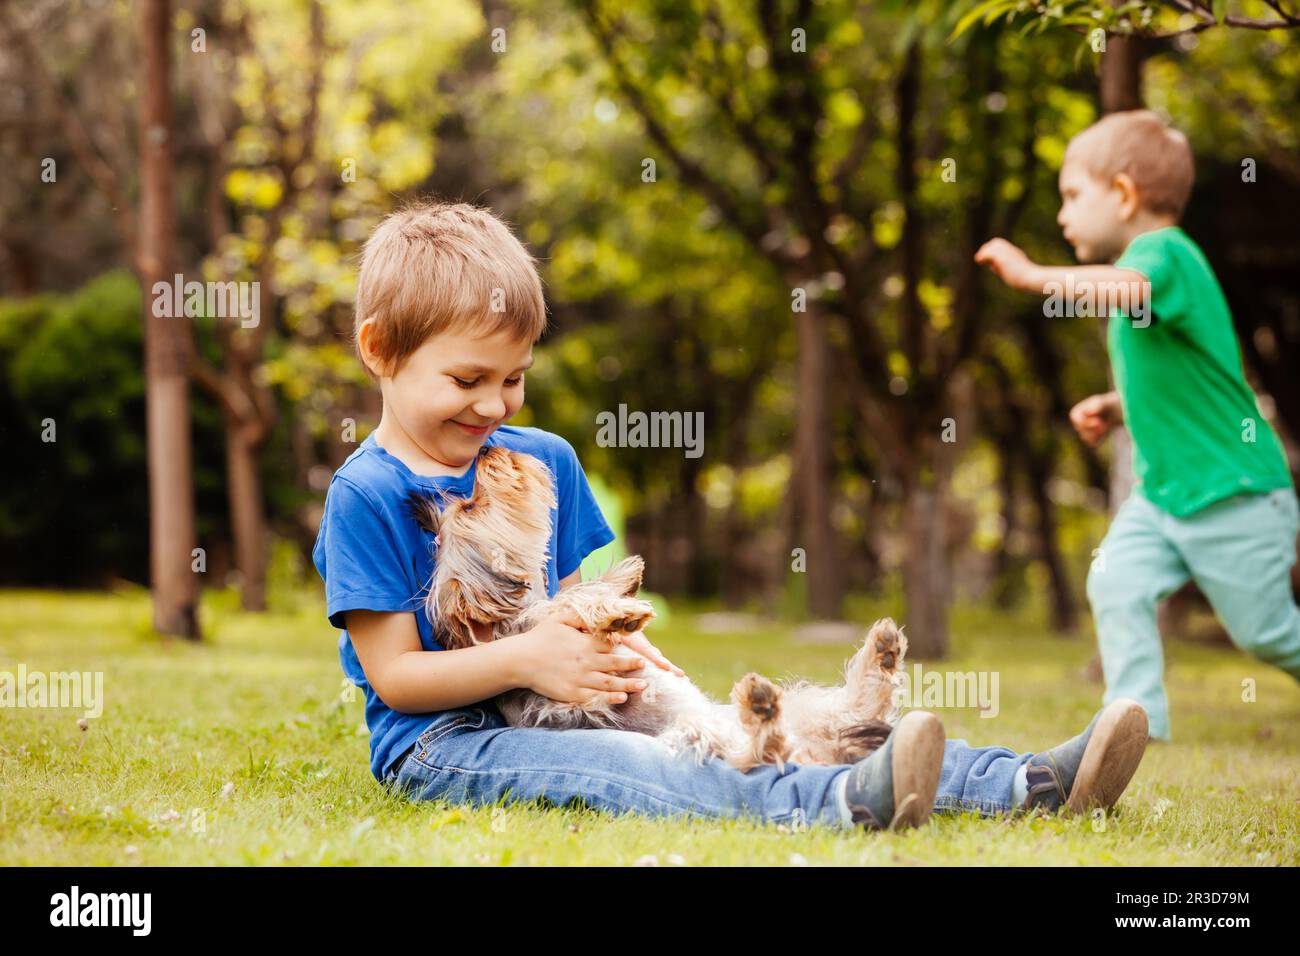 Harmonious children's life with a four-legged friend Stock Photo